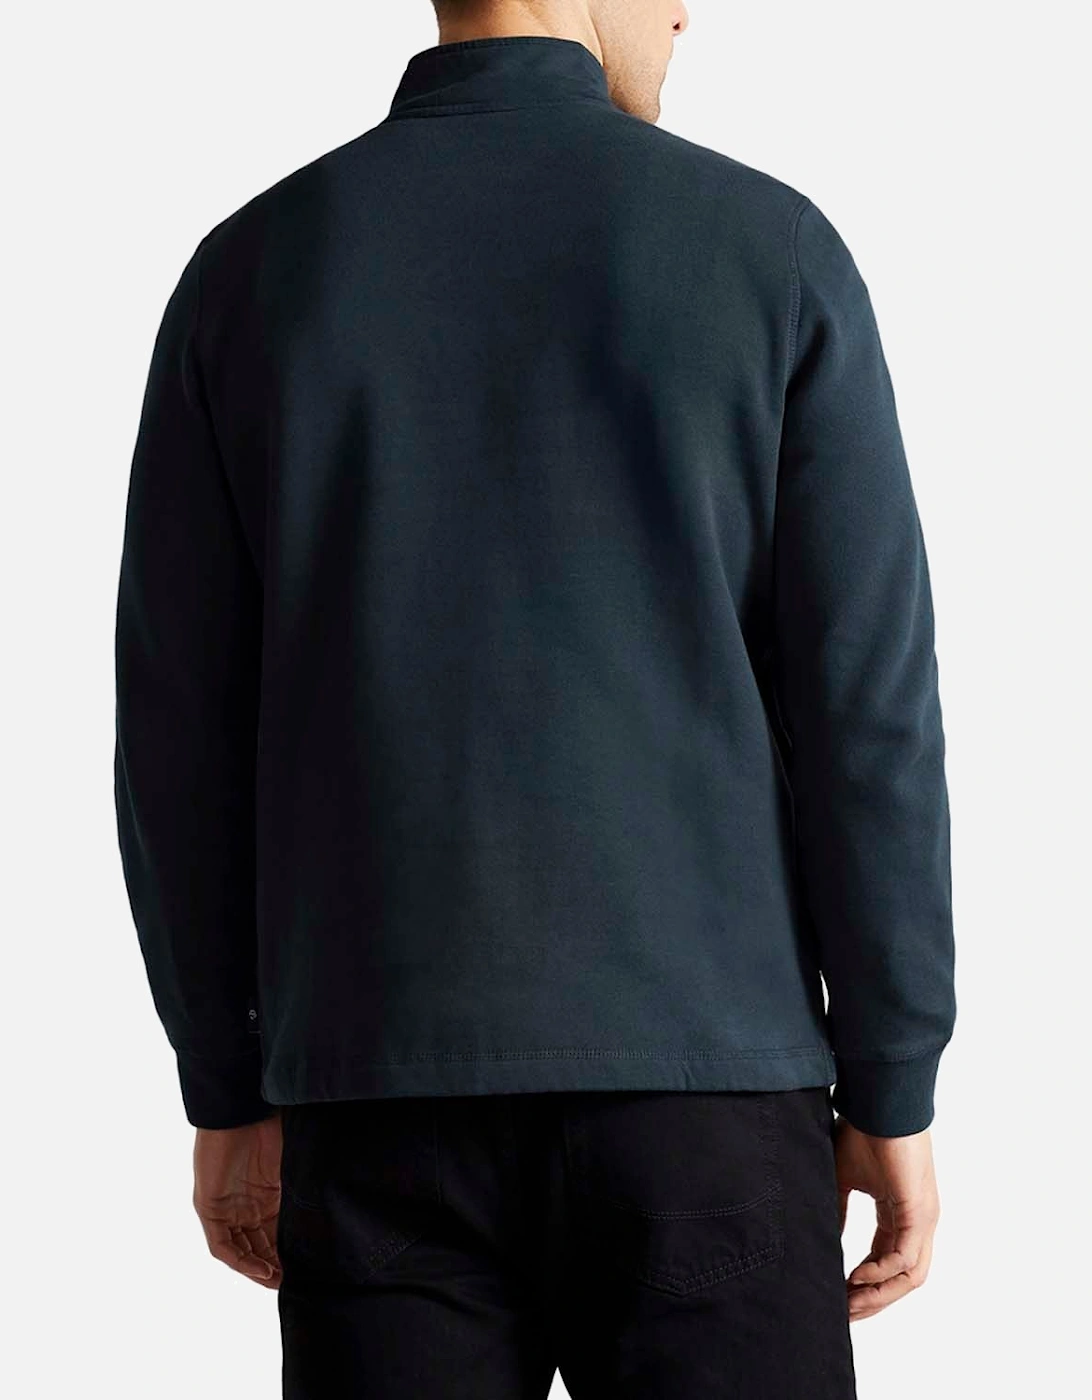 Kilbrn Half-Zip Sweatshirt